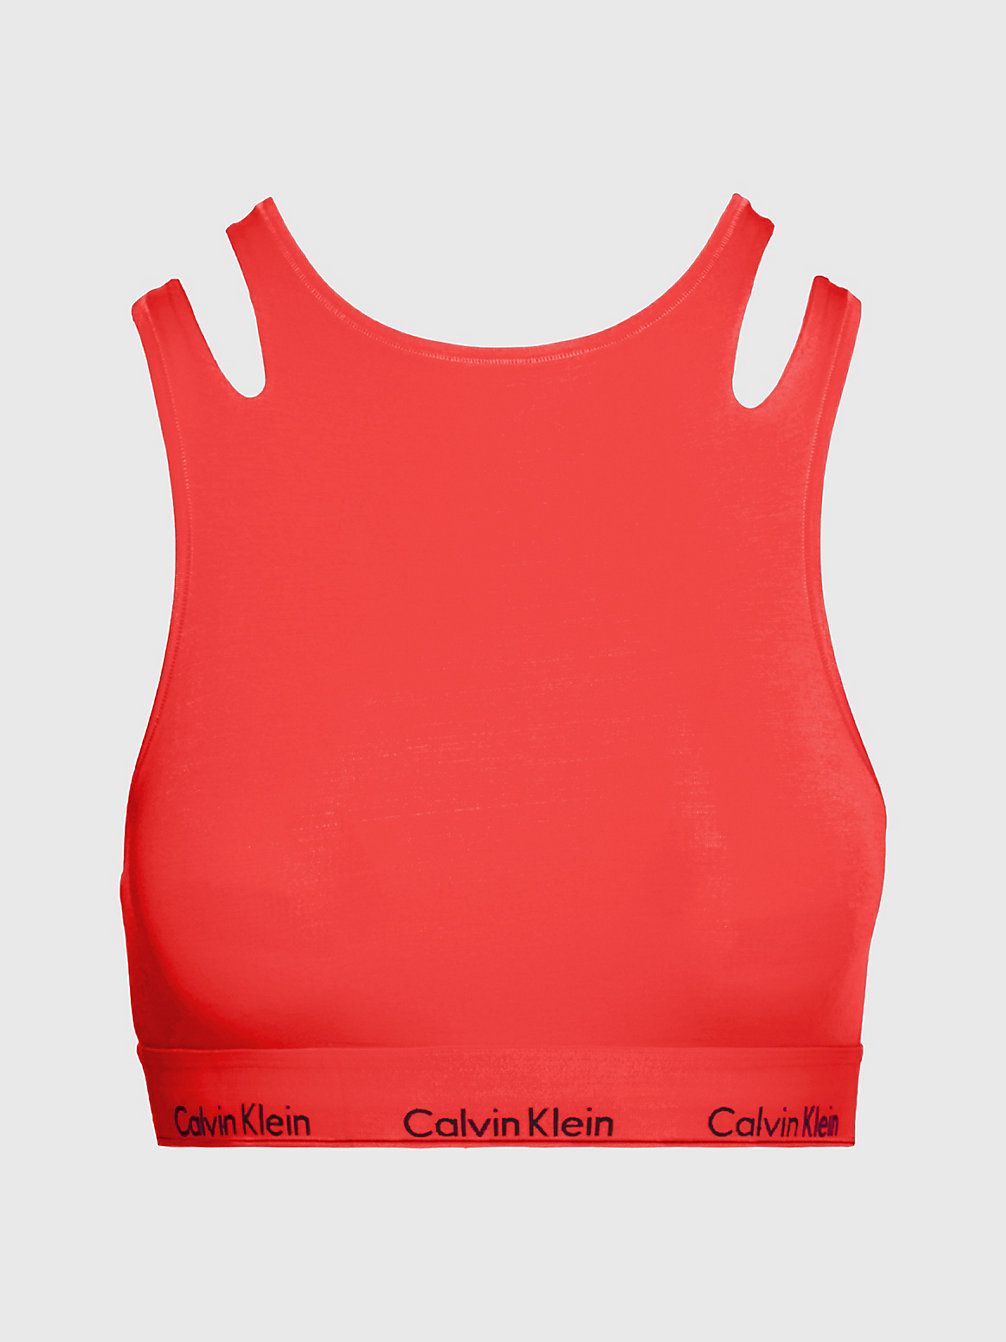 POPPY RED Bustier - CK Deconstructed undefined Damen Calvin Klein